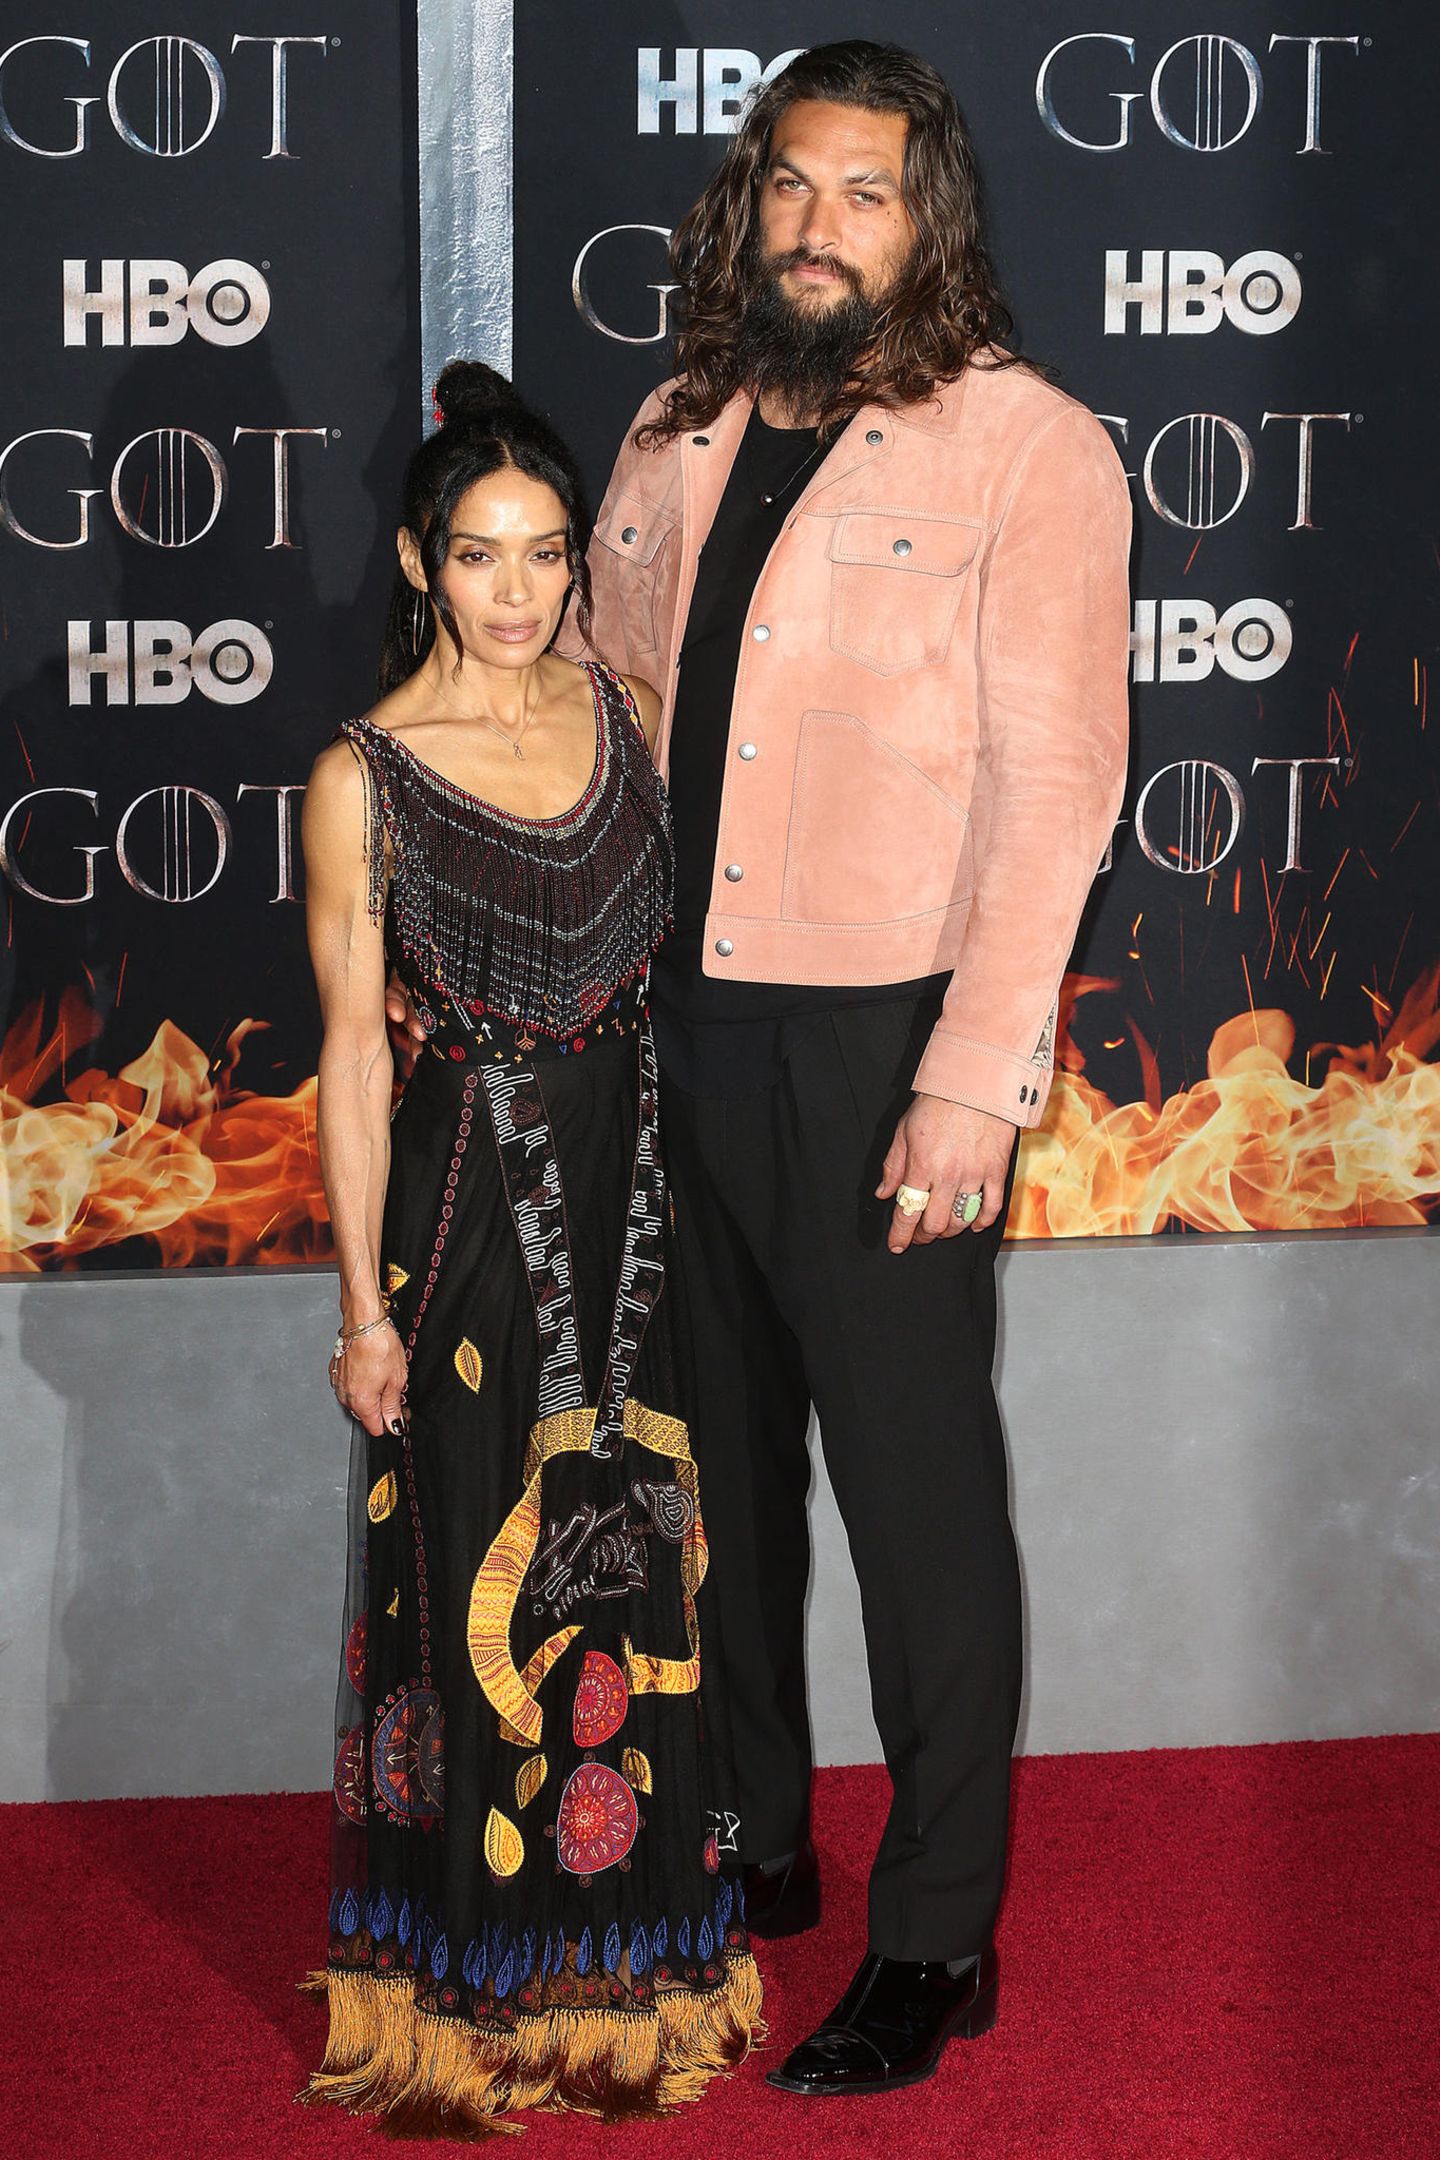 Das Schauspieler-Paar Lisa Bonet und Jason Mamoa trennt zwar 46 cm Körpergröße, doch als Paar harmonieren die beiden auffällig gut. Lisa und Jason kennen sich bereits seit 2005 und haben zwei gemeinsame Kinder. 